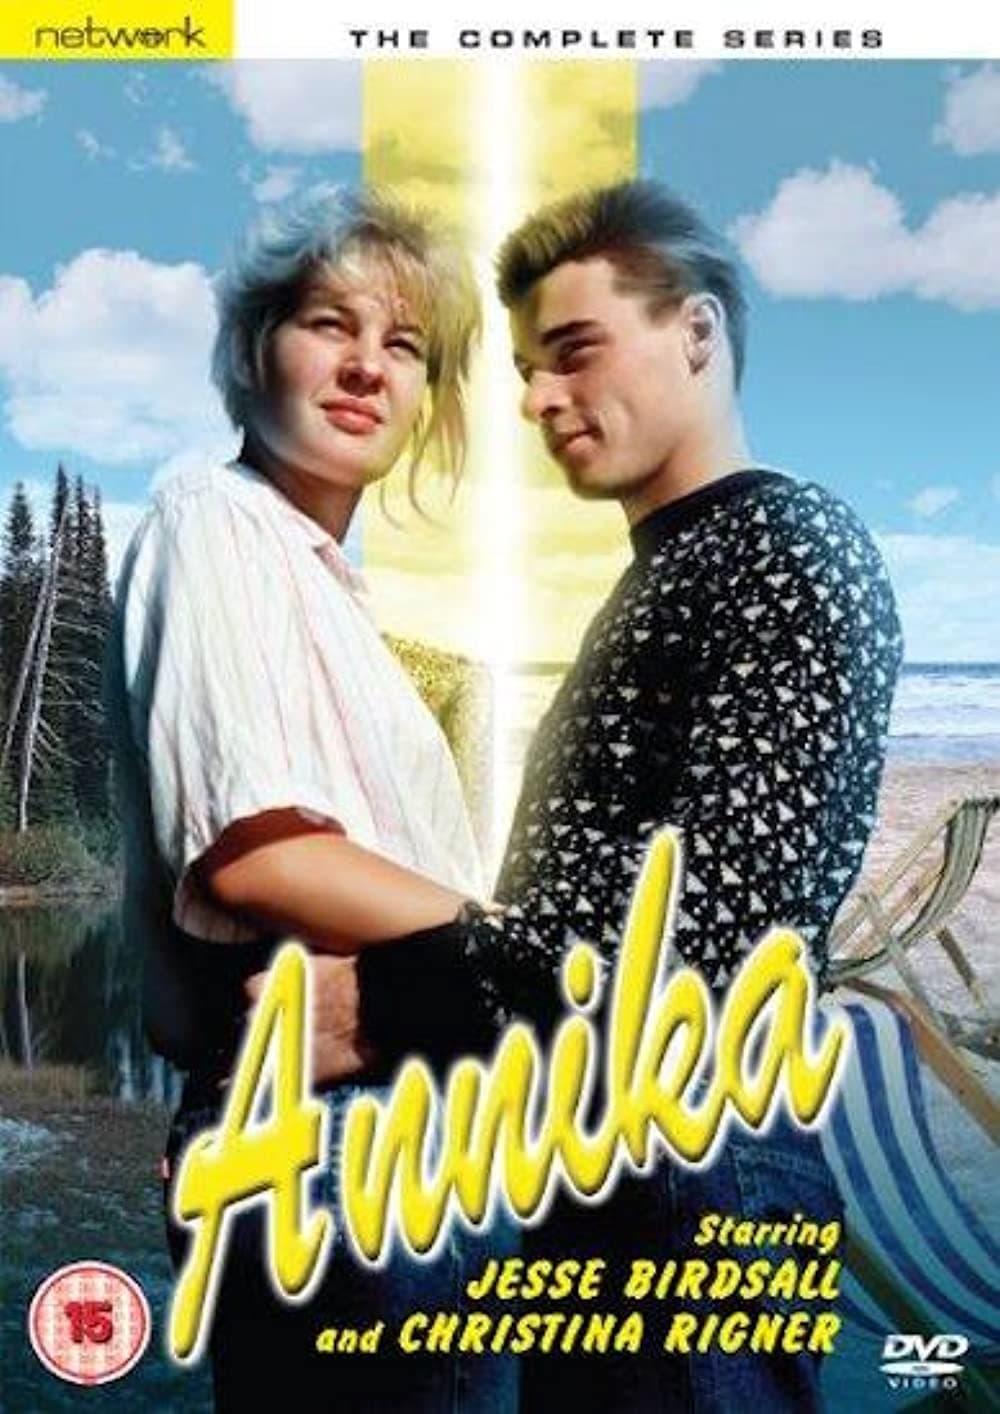 Annika poster